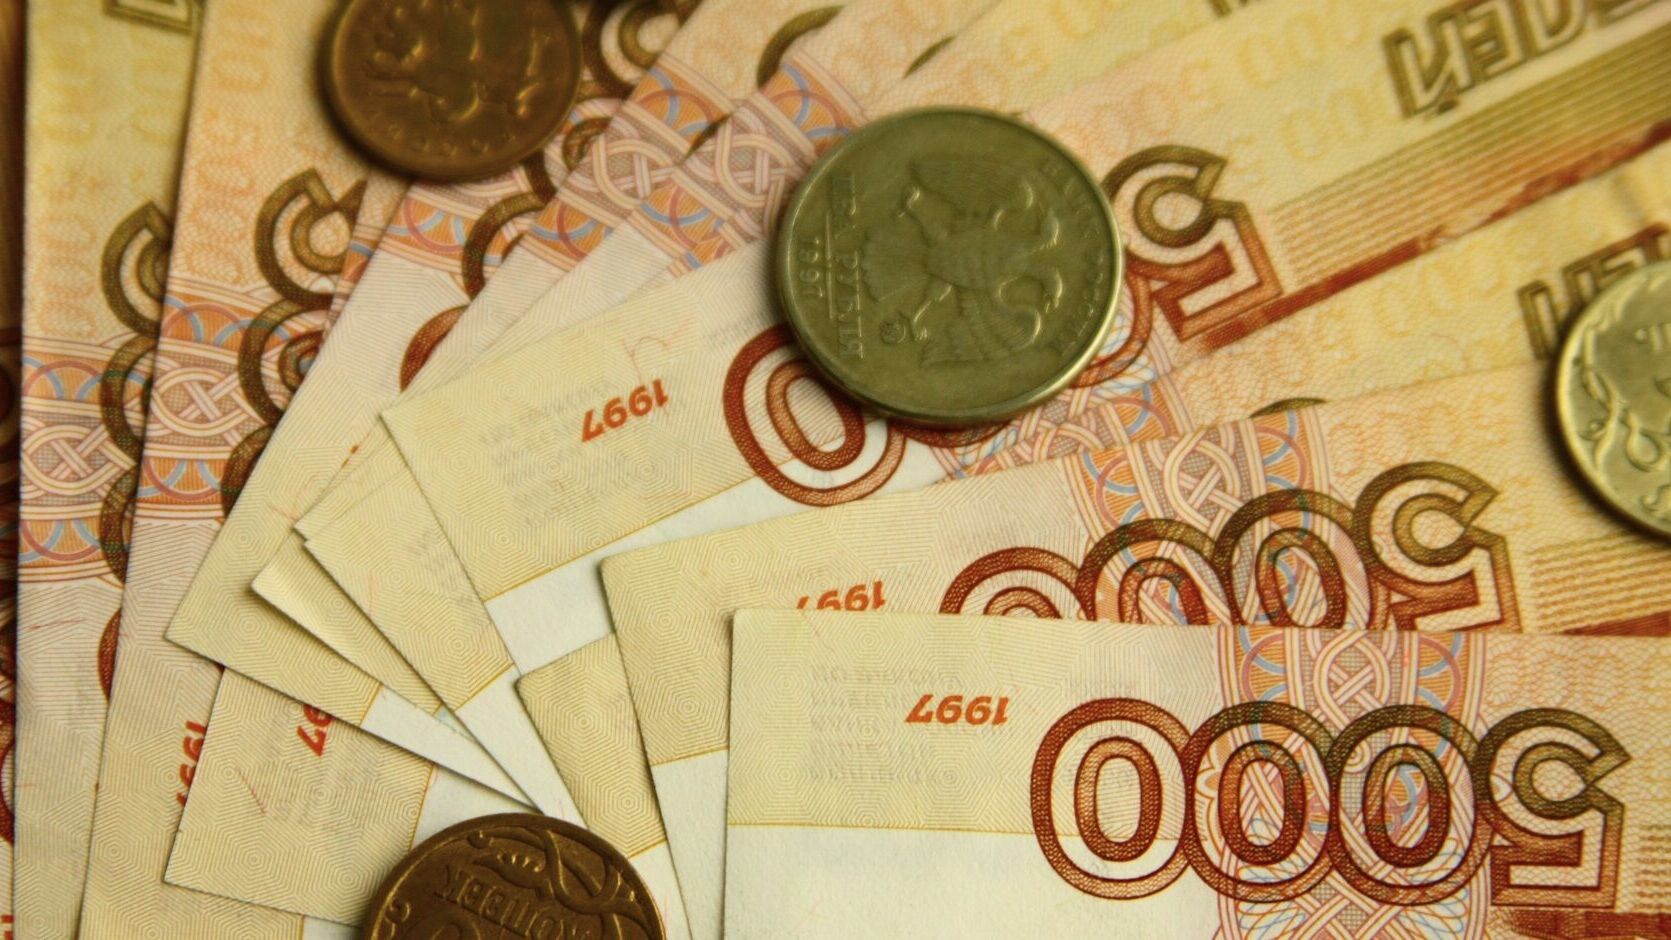 Пермяк разом оплатил долг почти в 2 млн рублей, чтобы выехать из страны